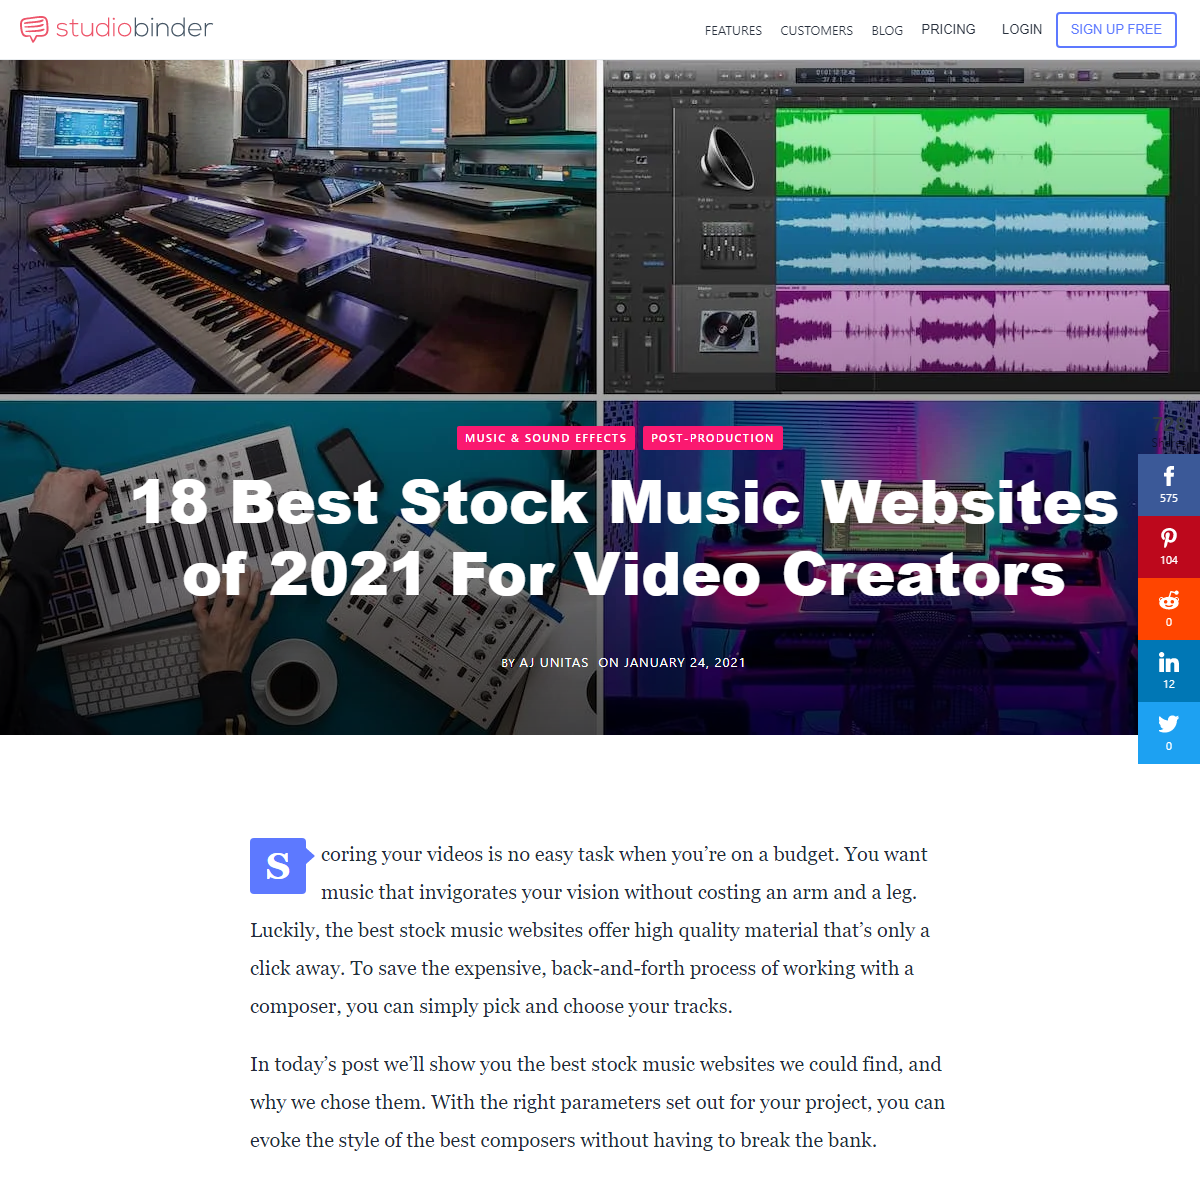 A complete backup of https://www.studiobinder.com/blog/best-stock-music-websites/